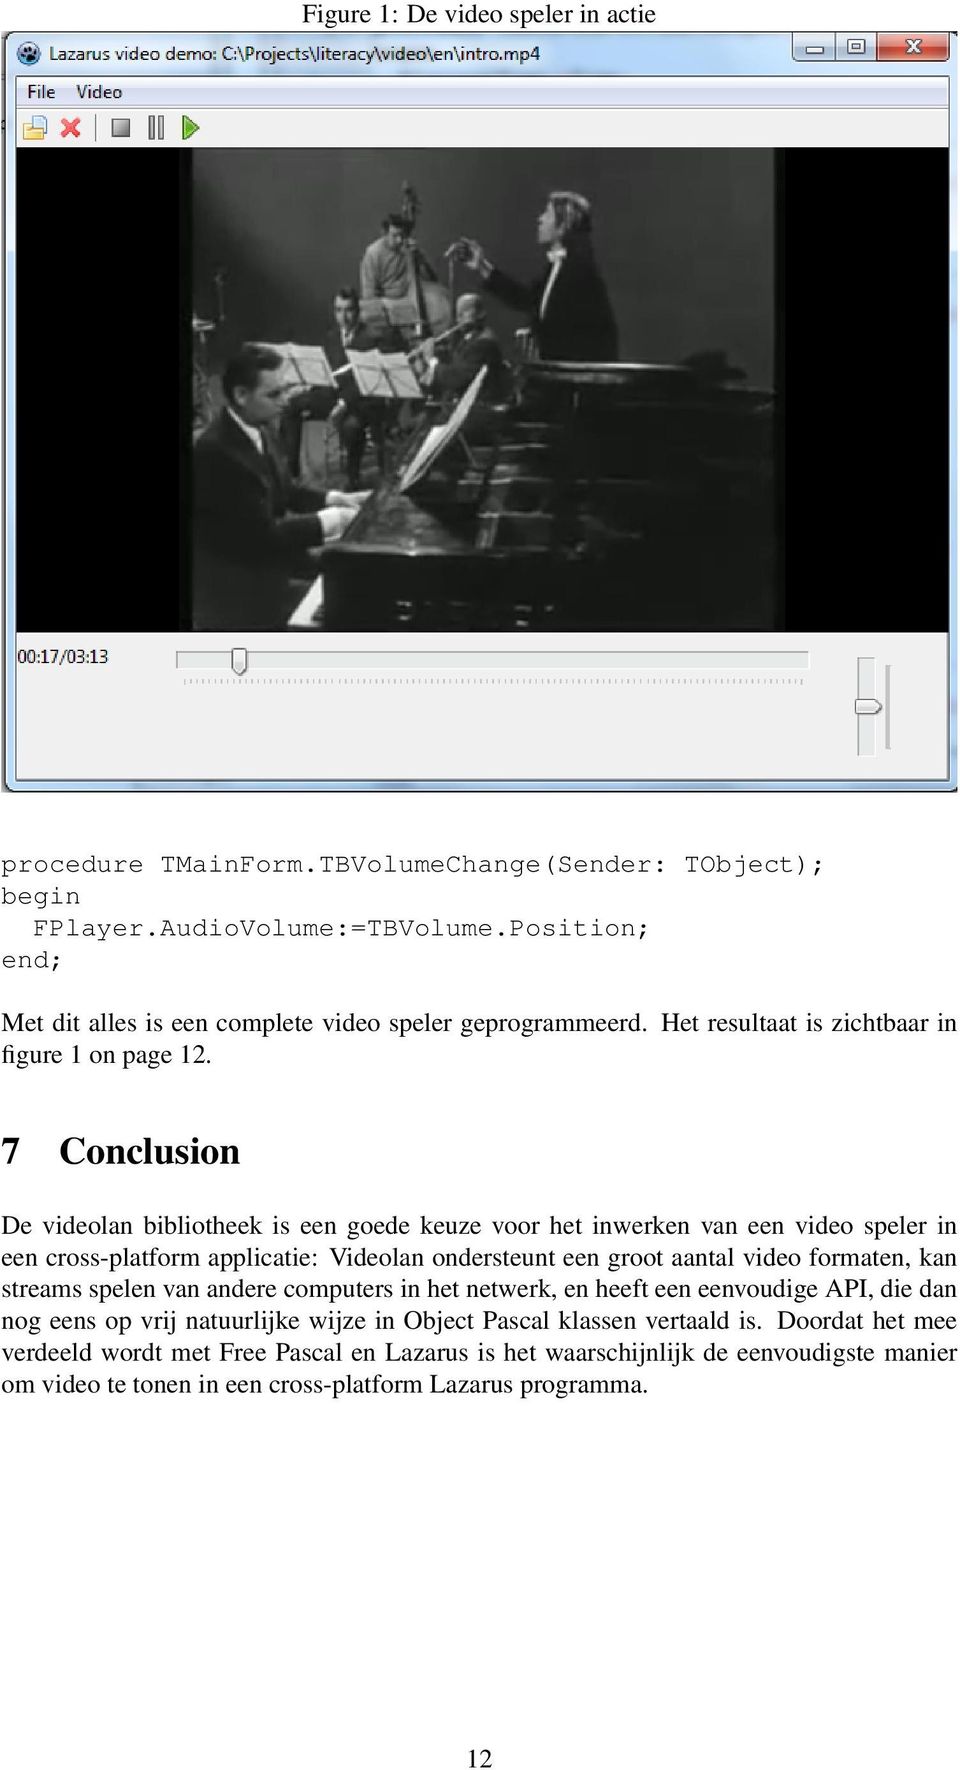 7 Conclusion De videolan bibliotheek is een goede keuze voor het inwerken van een video speler in een cross-platform applicatie: Videolan ondersteunt een groot aantal video formaten, kan